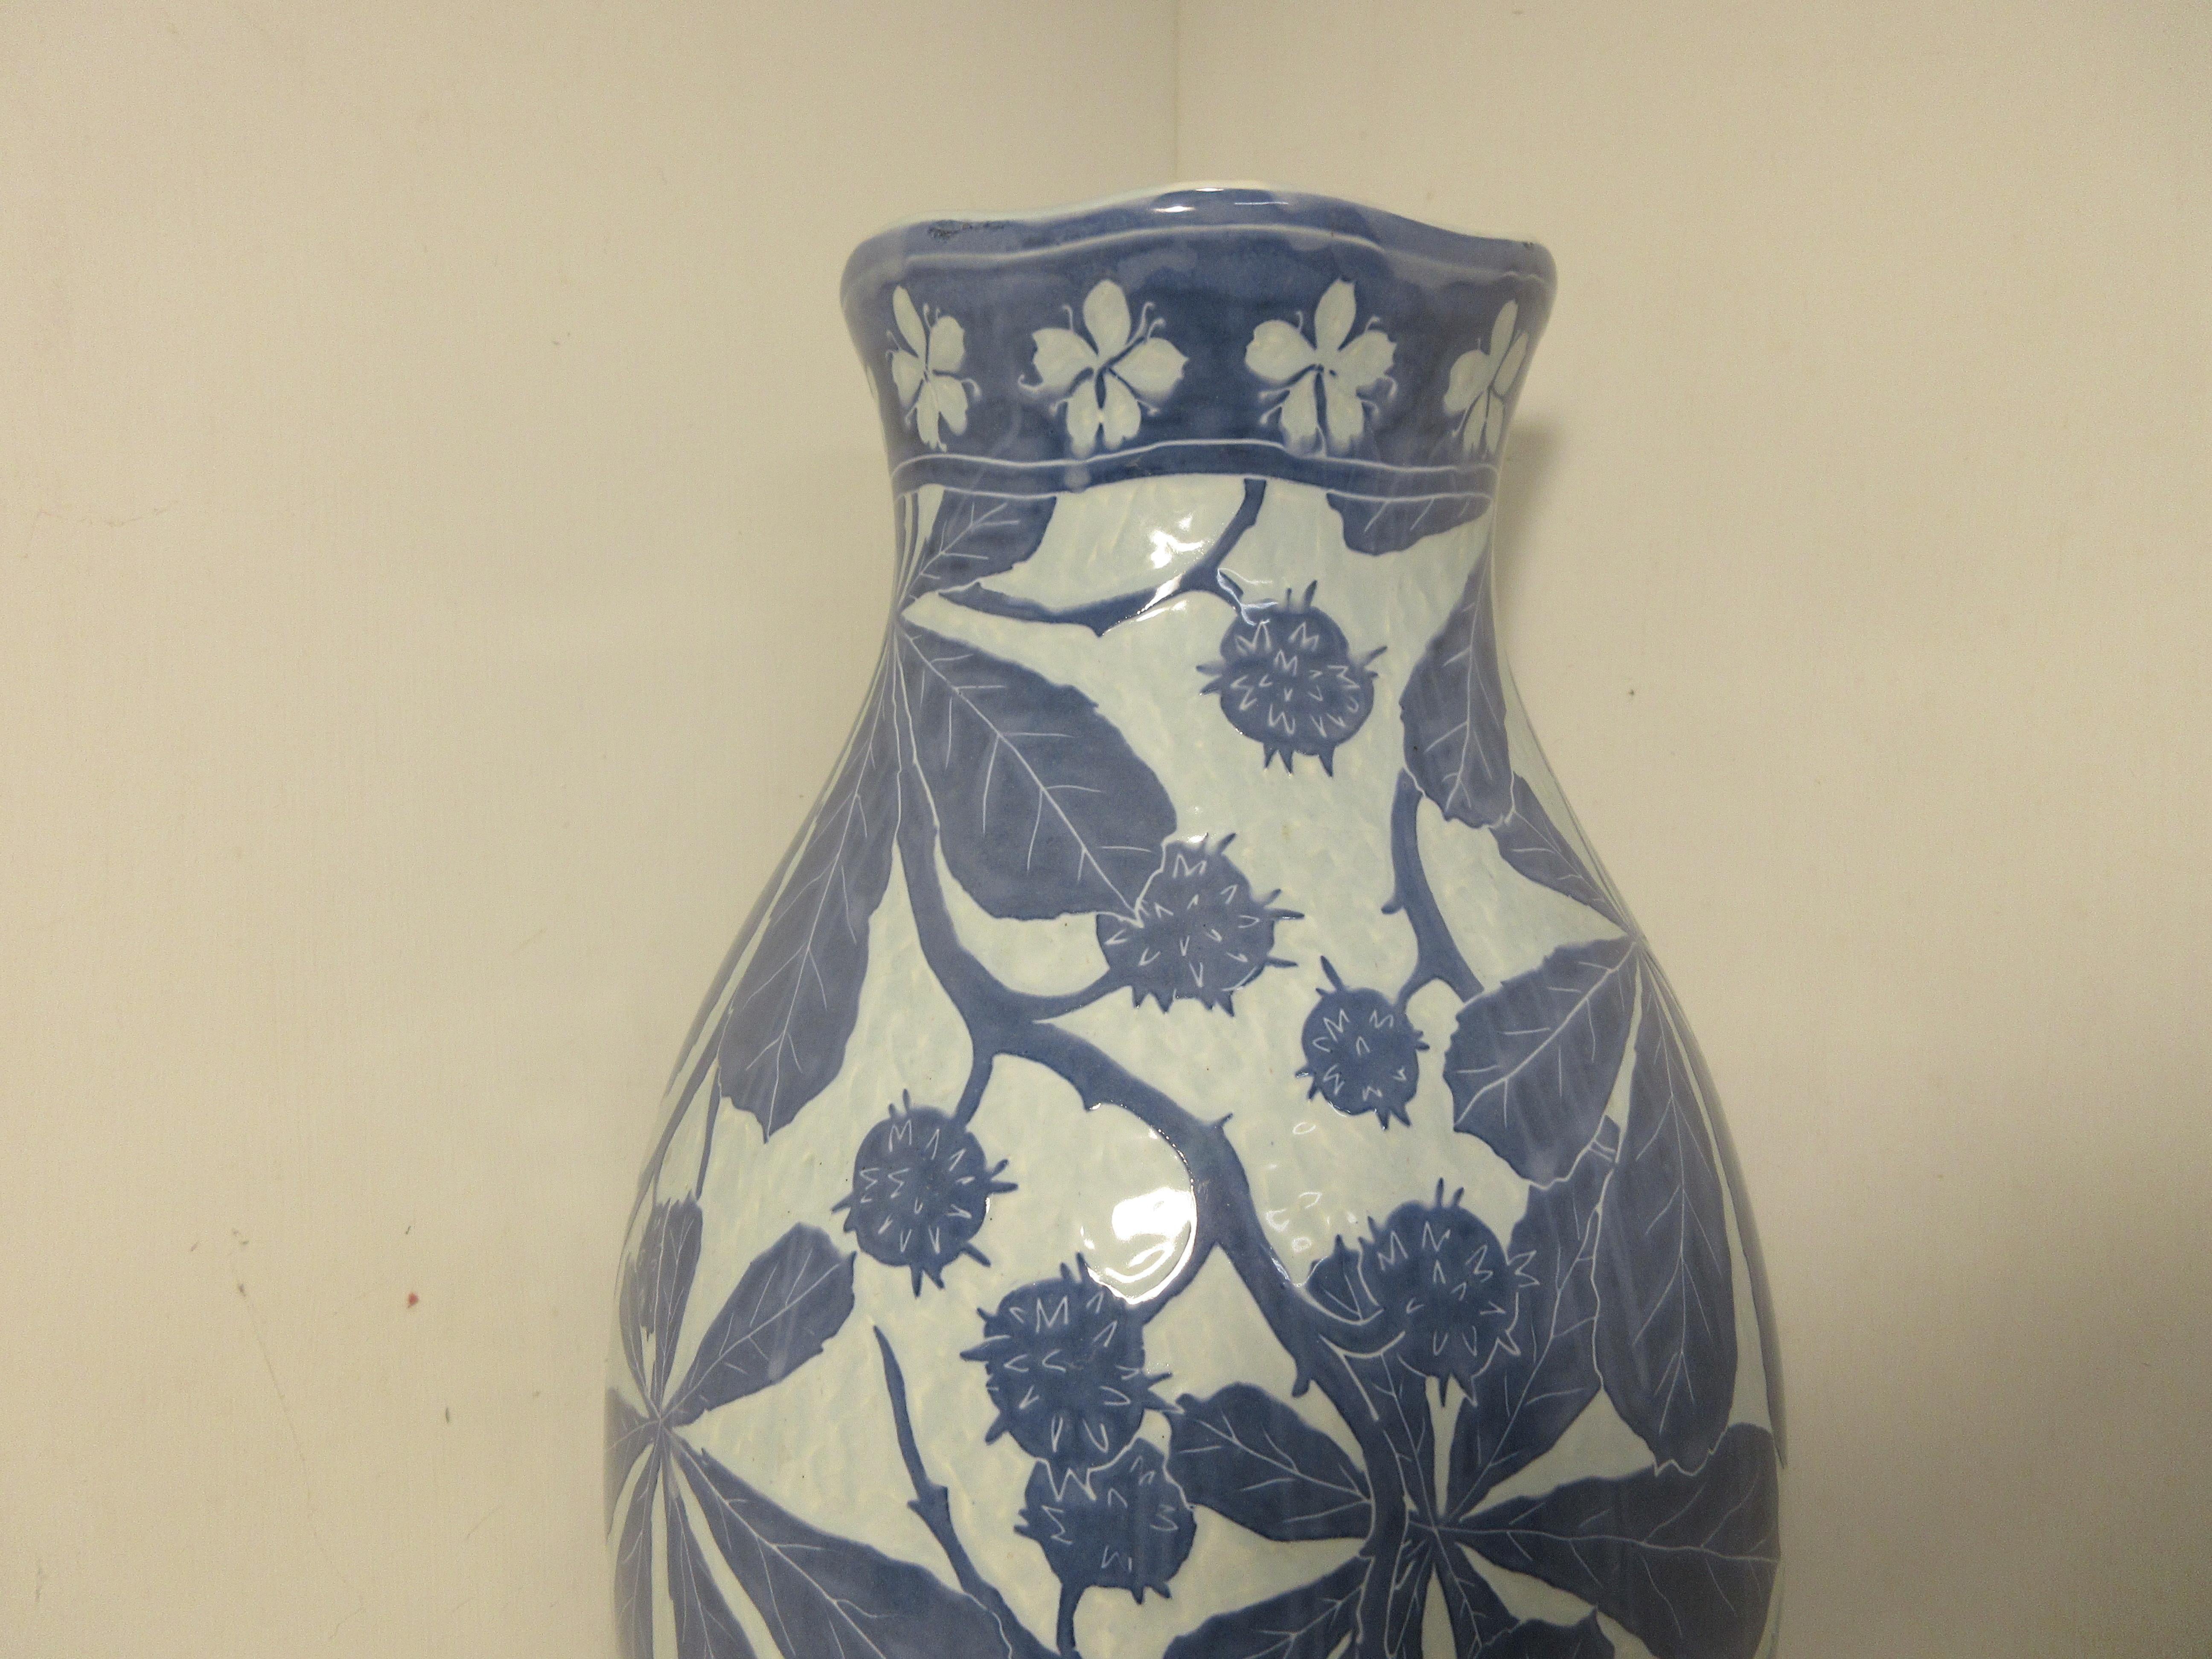 Dies ist eine handgefertigte Sgraffito-Vase (1 Stück) des schwedischen Keramikkünstlers Josef Ekberg aus dem Jahr 1901. Zu dieser Zeit war er einer der besten schwedischen Keramikkünstler. Er arbeitete von 1898 bis zu seinem Tod im Jahr 1945 in der